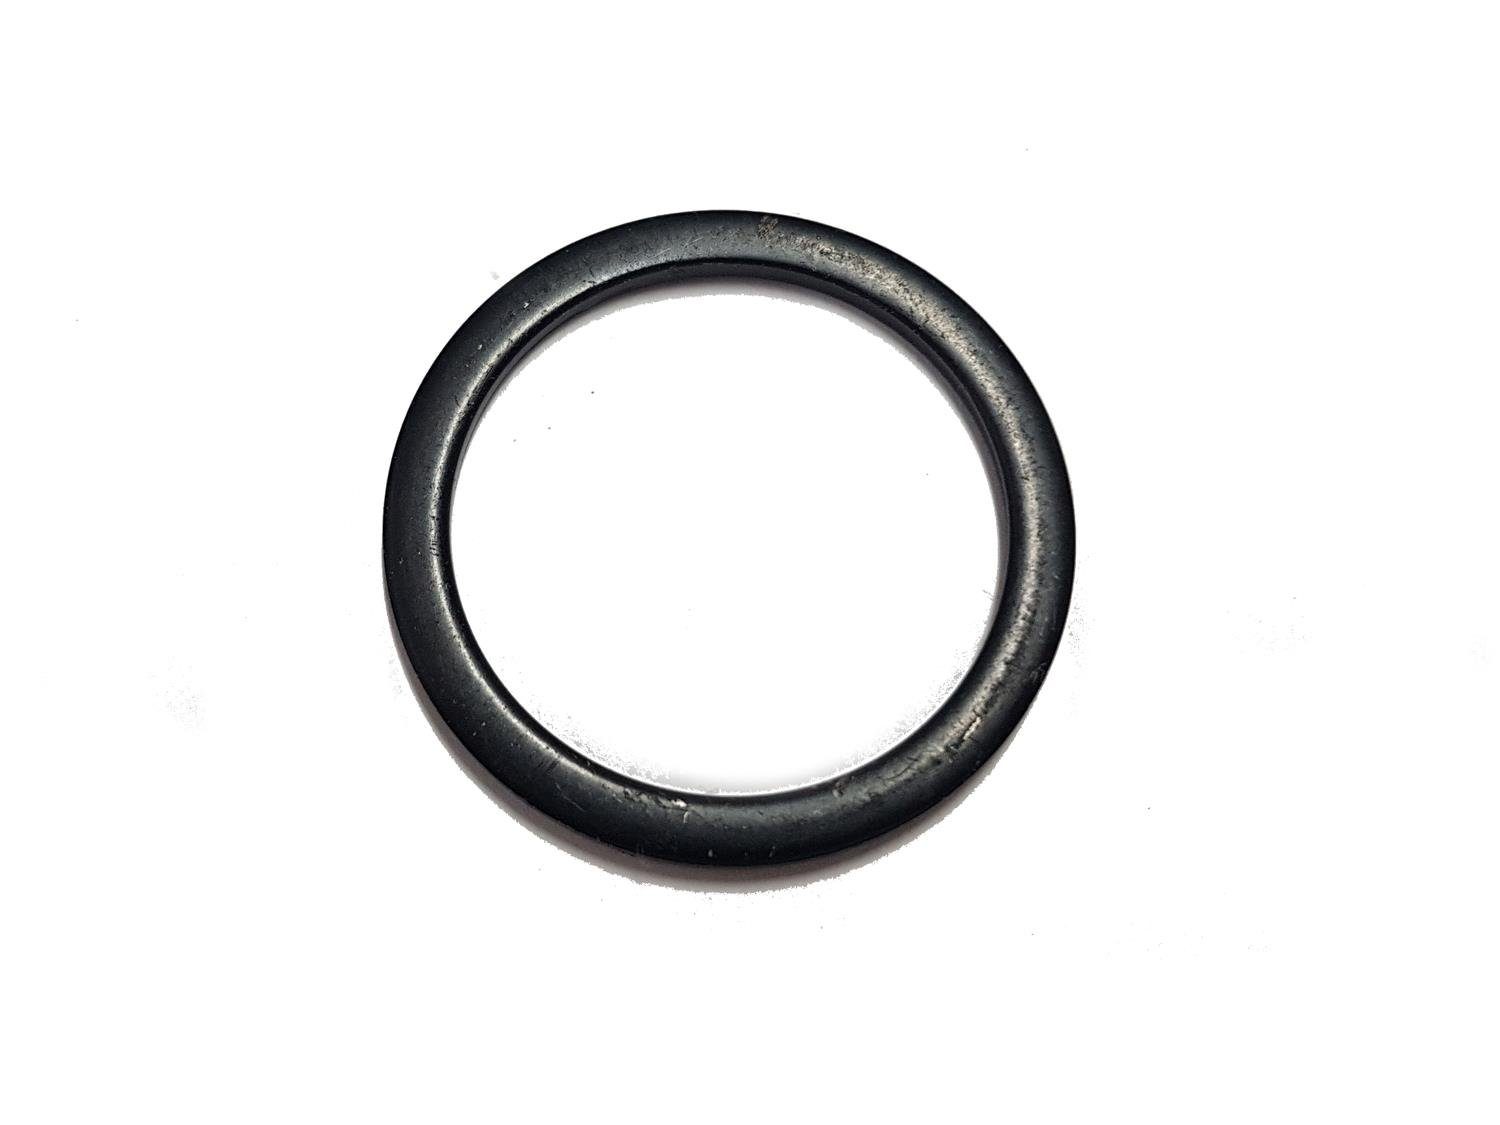 Non-Branded Lenkervorbau Fahrrad Spacer Vorbau Distanz Ring 1 1/8 Zoll Steuersatz 2mm schwarz